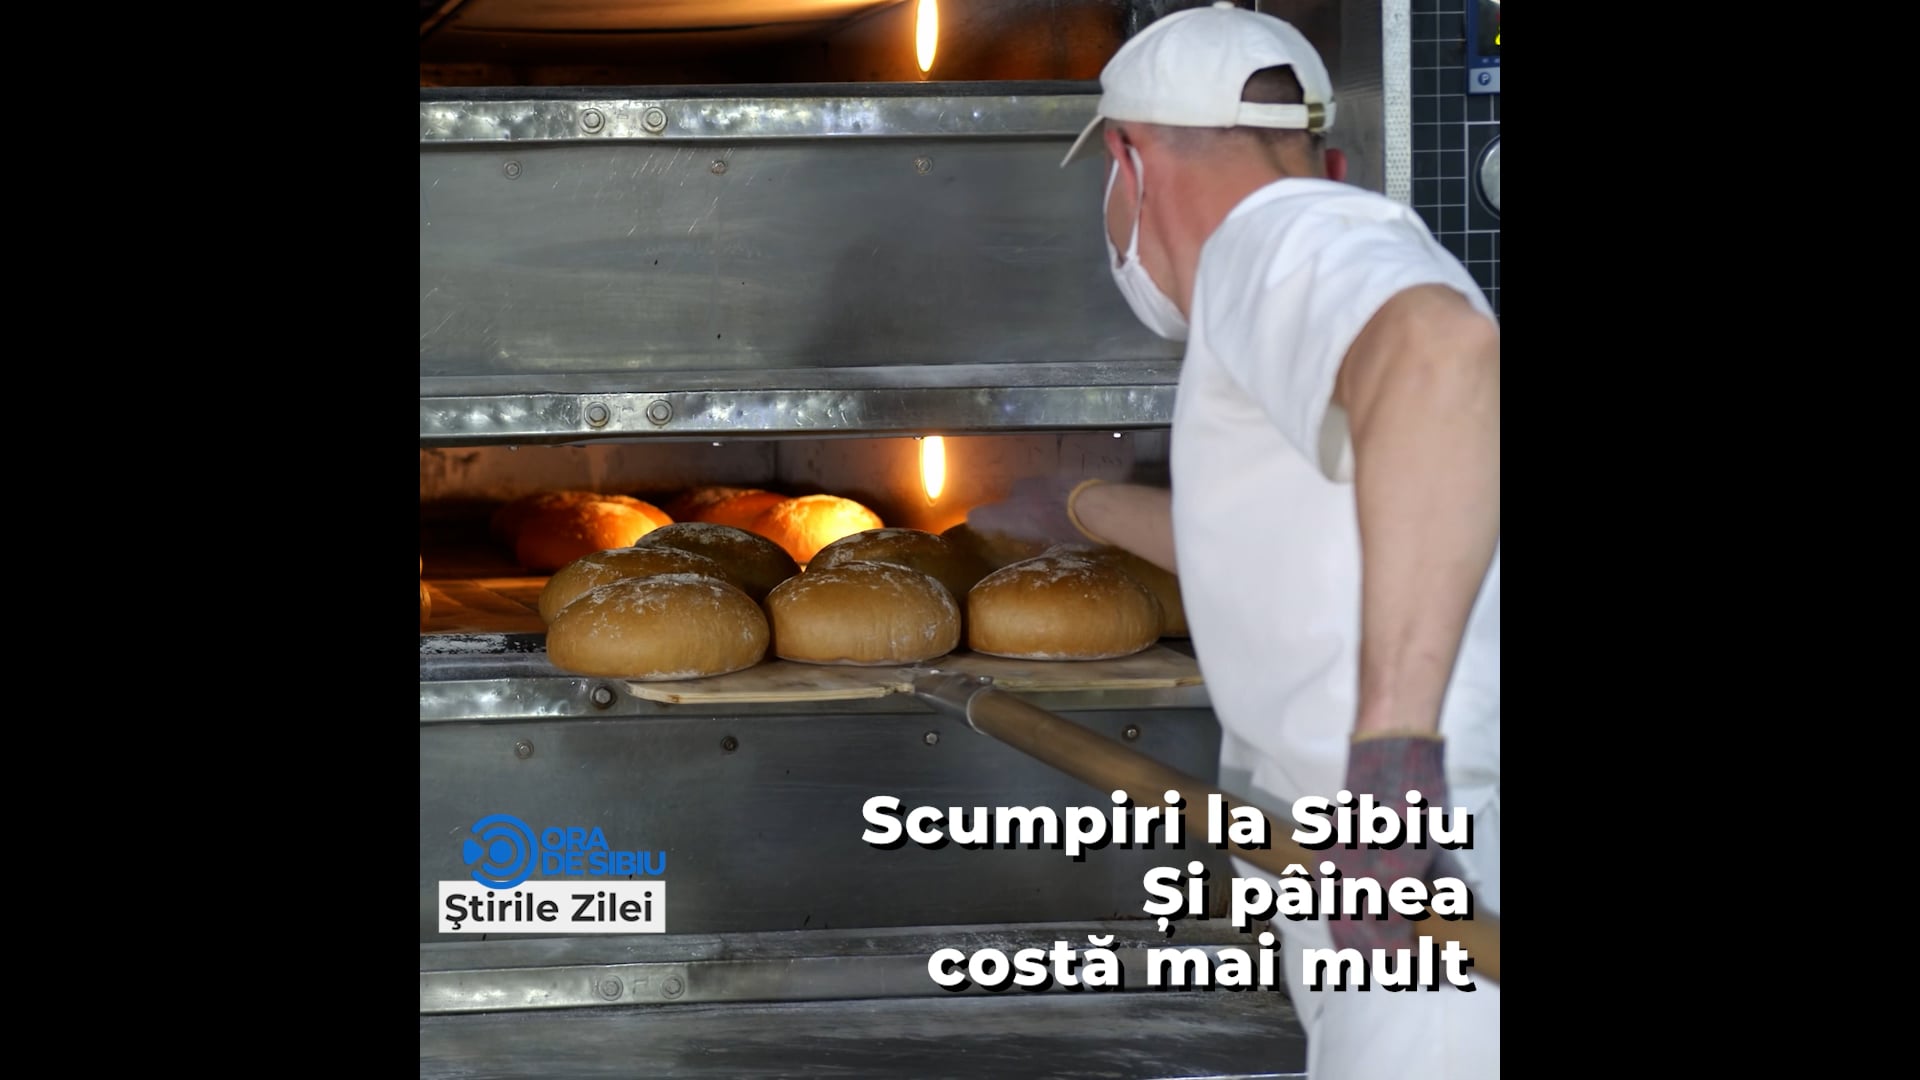 Scumpiri la Sibiu – Si pâinea costă mai mult